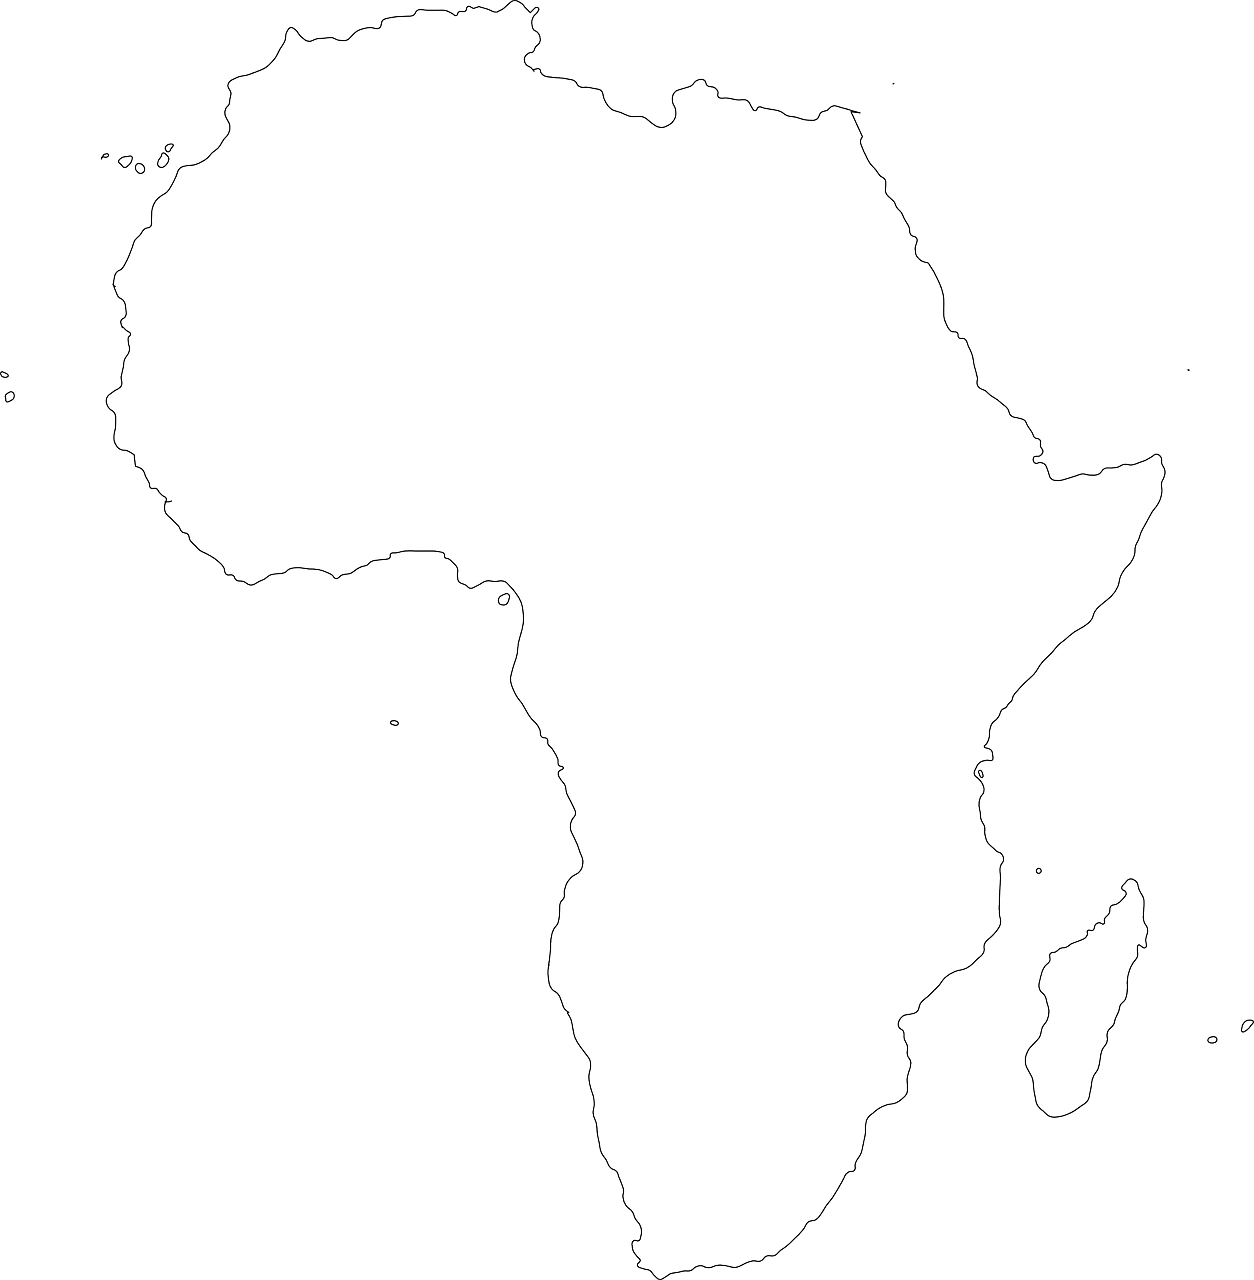 eine schwarz-weiße Karte von Afrika.